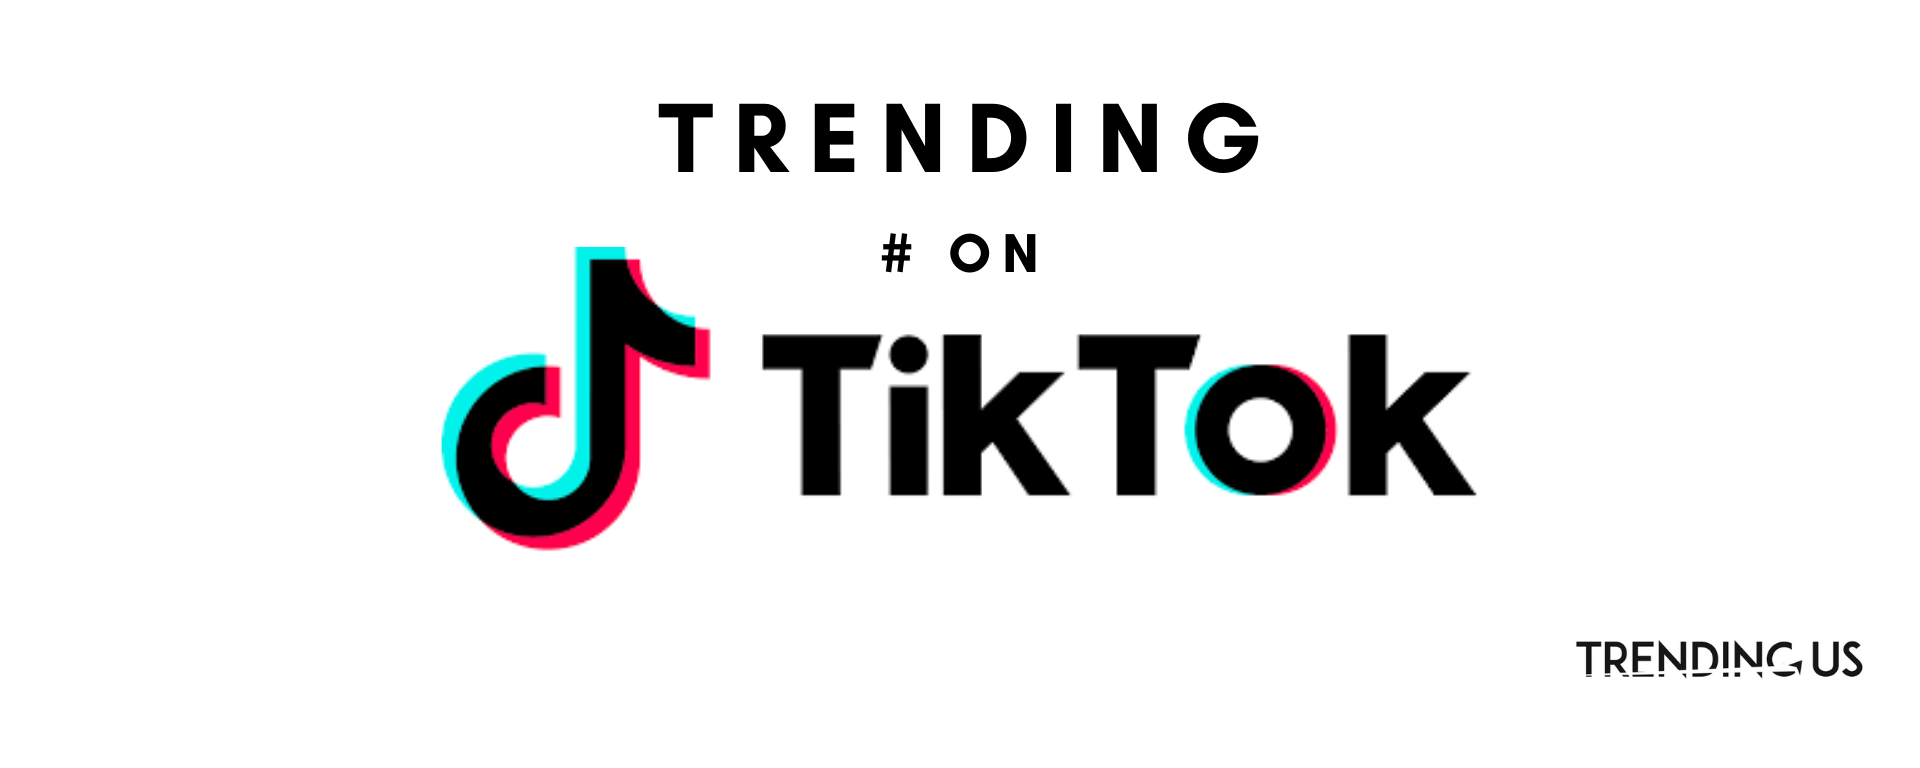 Trending Hashtag On Tiktok